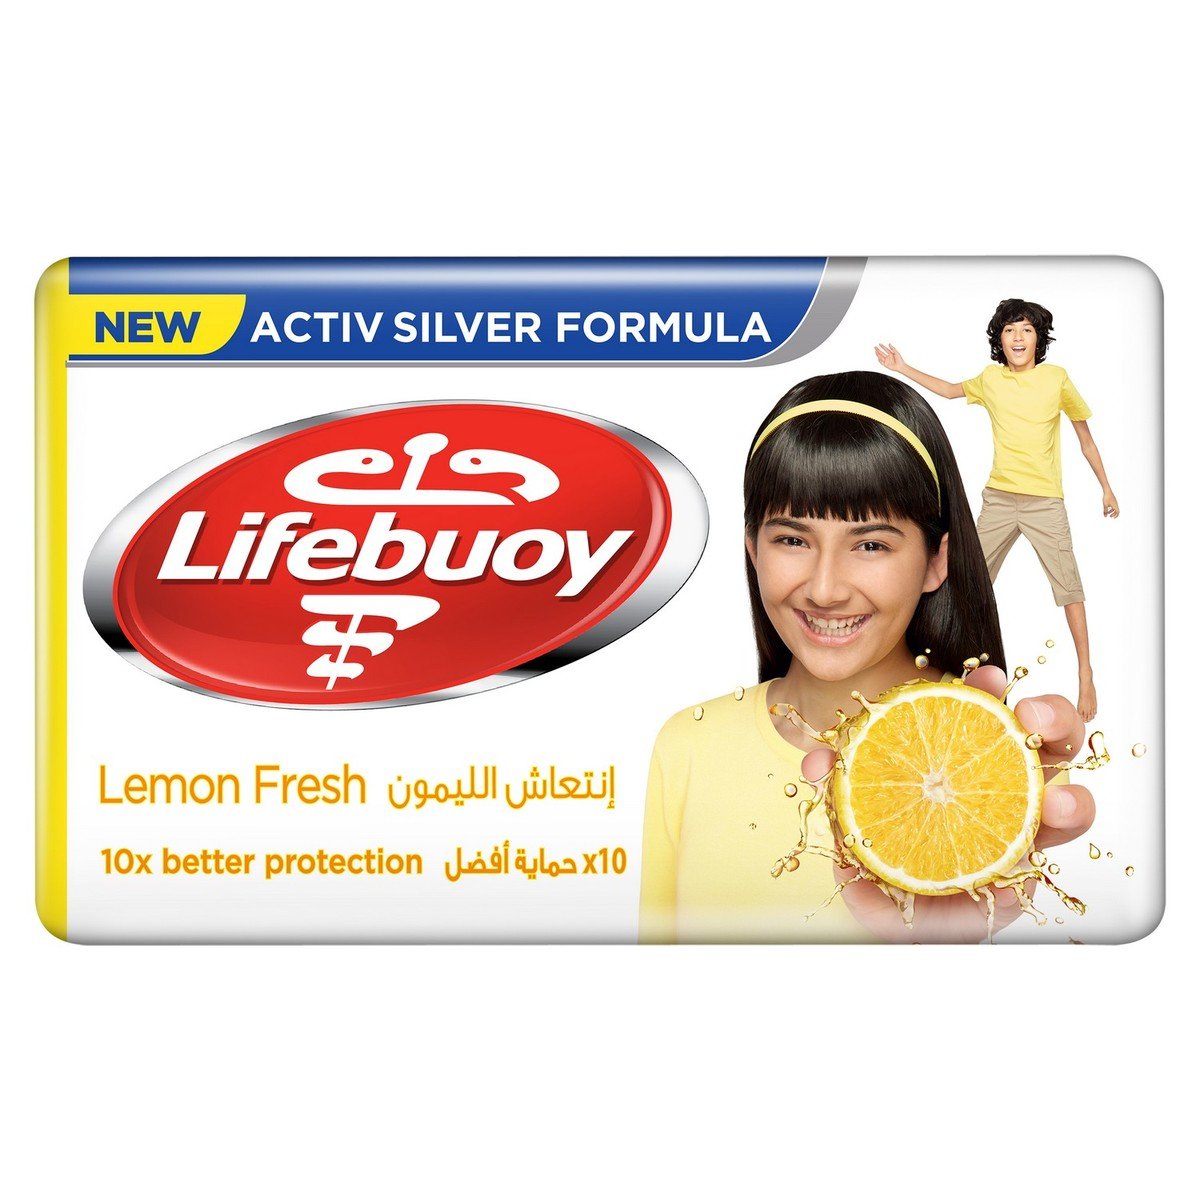 Lifebuoy Anti Bacterial Bar Lemon Fresh 125 g